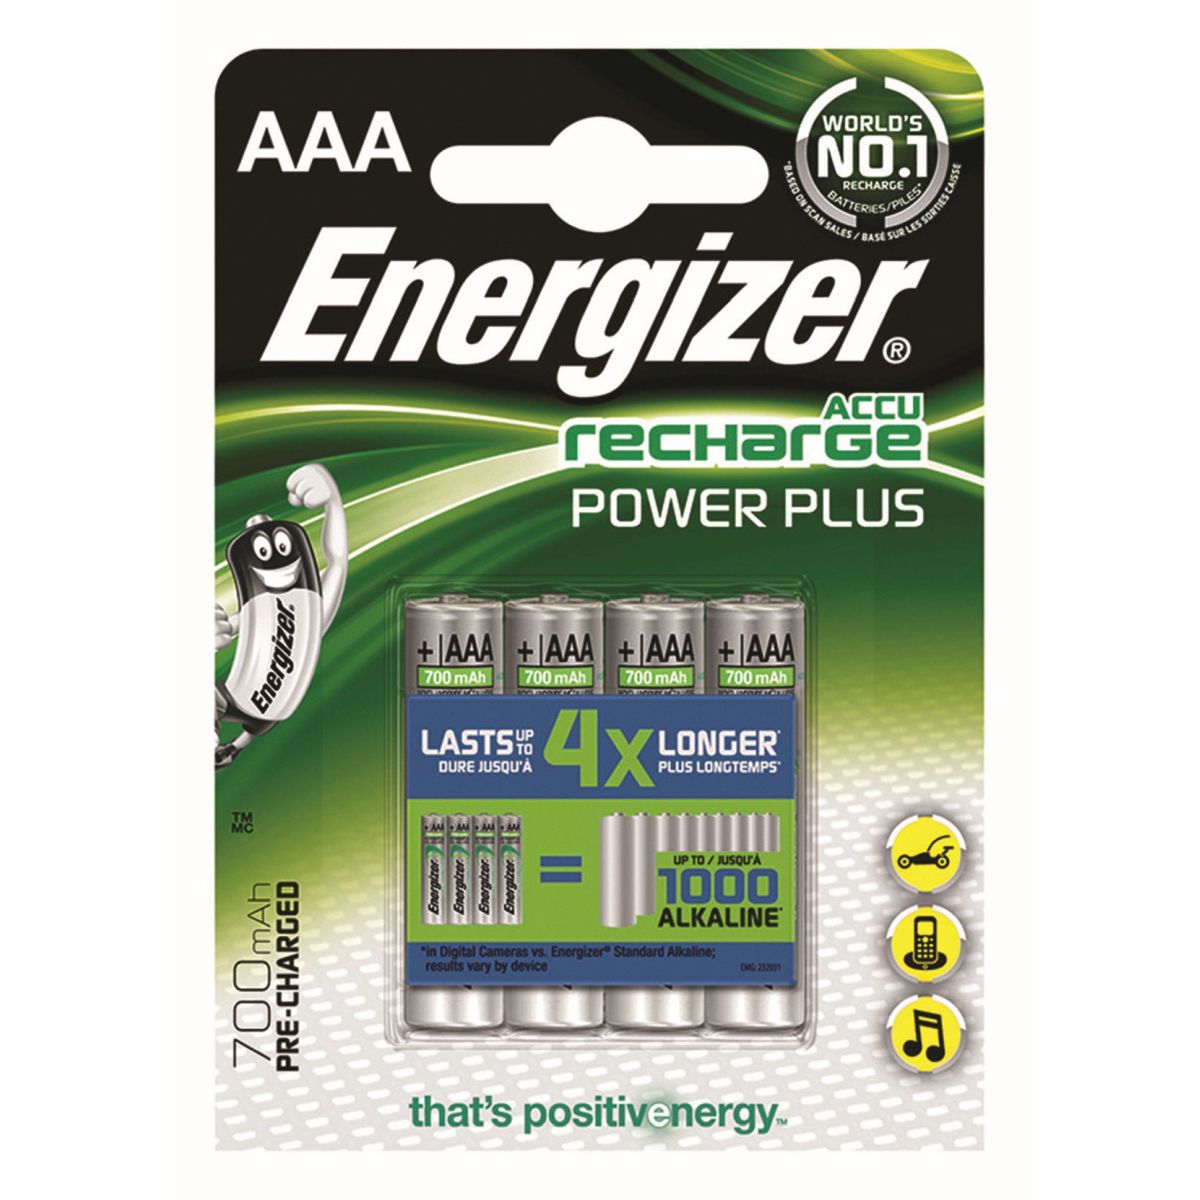 Akumulator Energizer HR03 700 mAh AAA (EN-417005)